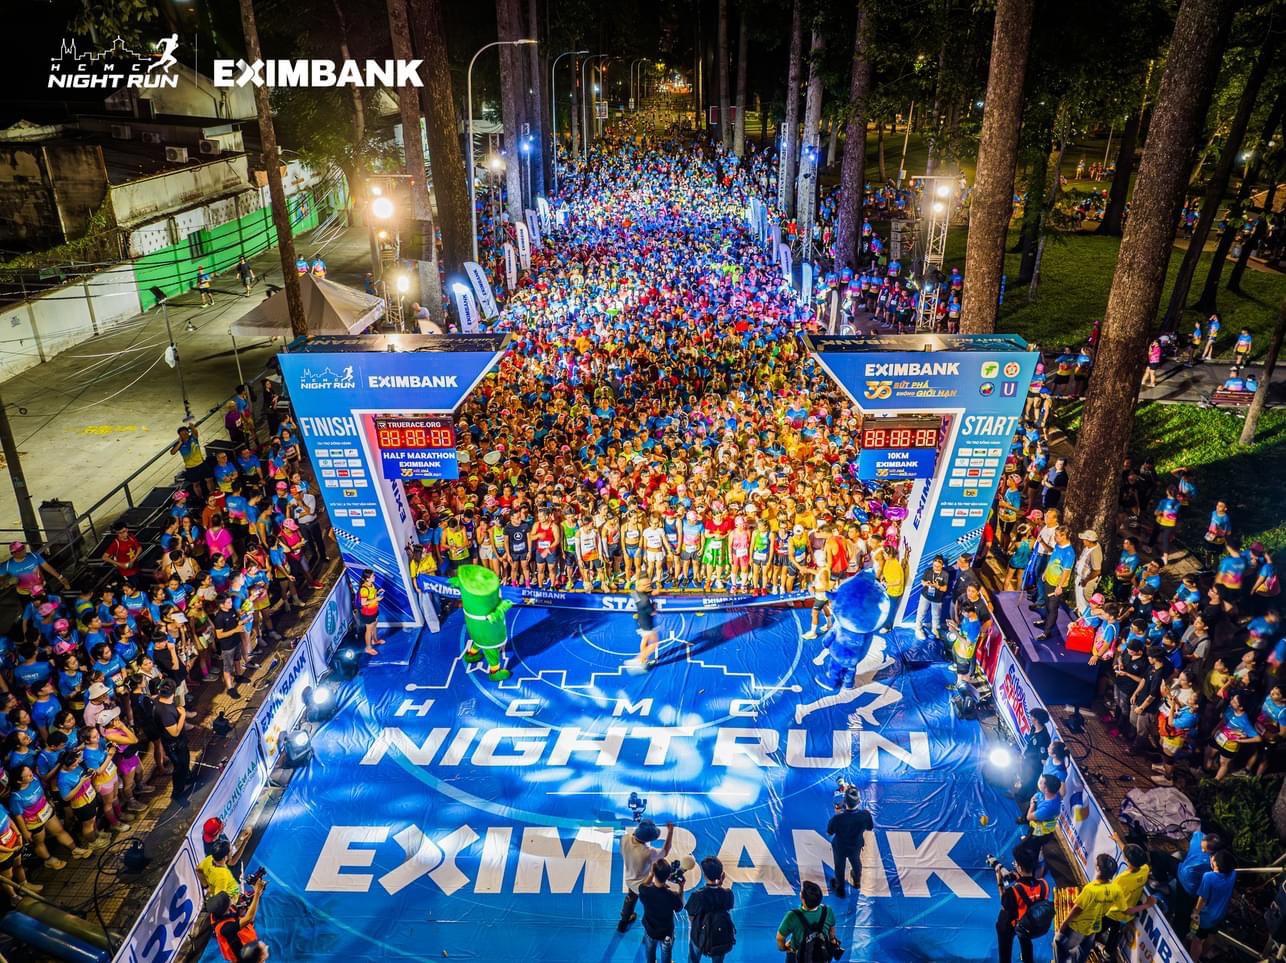 Ho Chi Minh City Night Run Eximbank thành công rực rỡ  - lan tỏa tinh thần năng động và “bứt phá” đến cộng đồng- Ảnh 1.